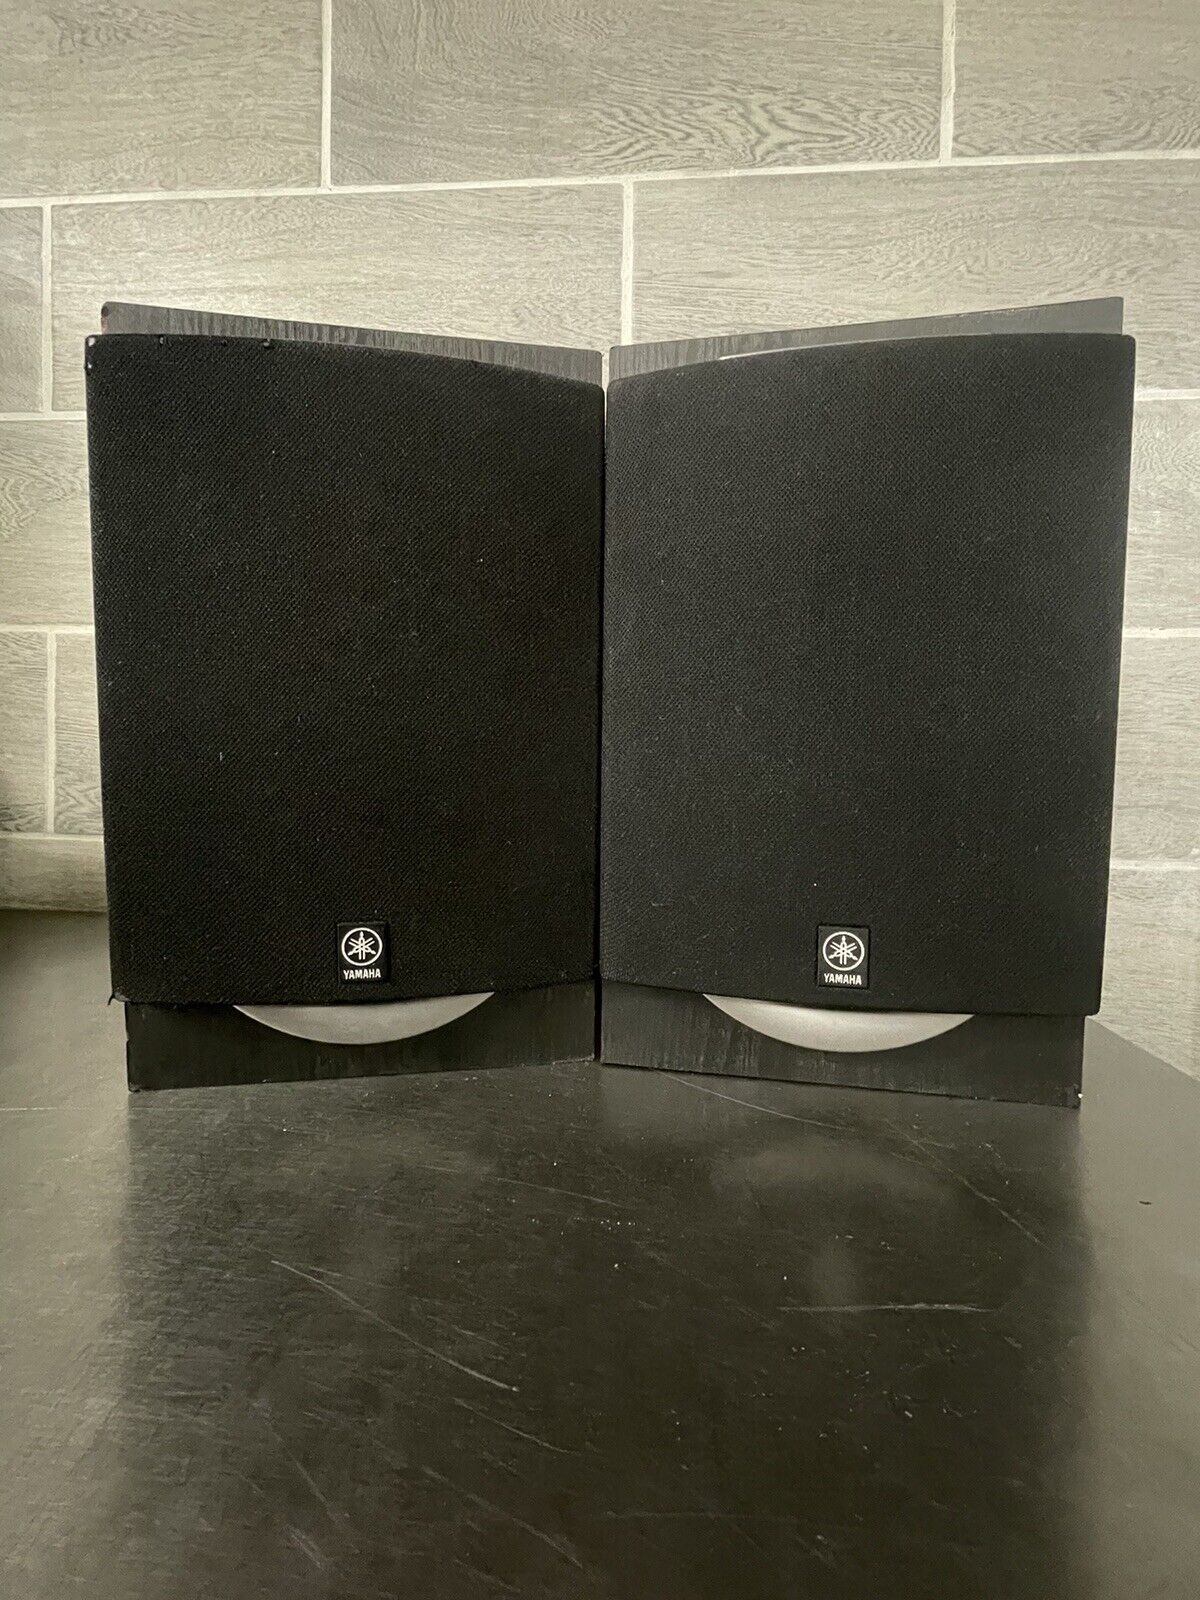 Set of 2 YAMAHA NX-GX500 6ohm Bookshelf Speakers Medium Wood Finish Tested Works